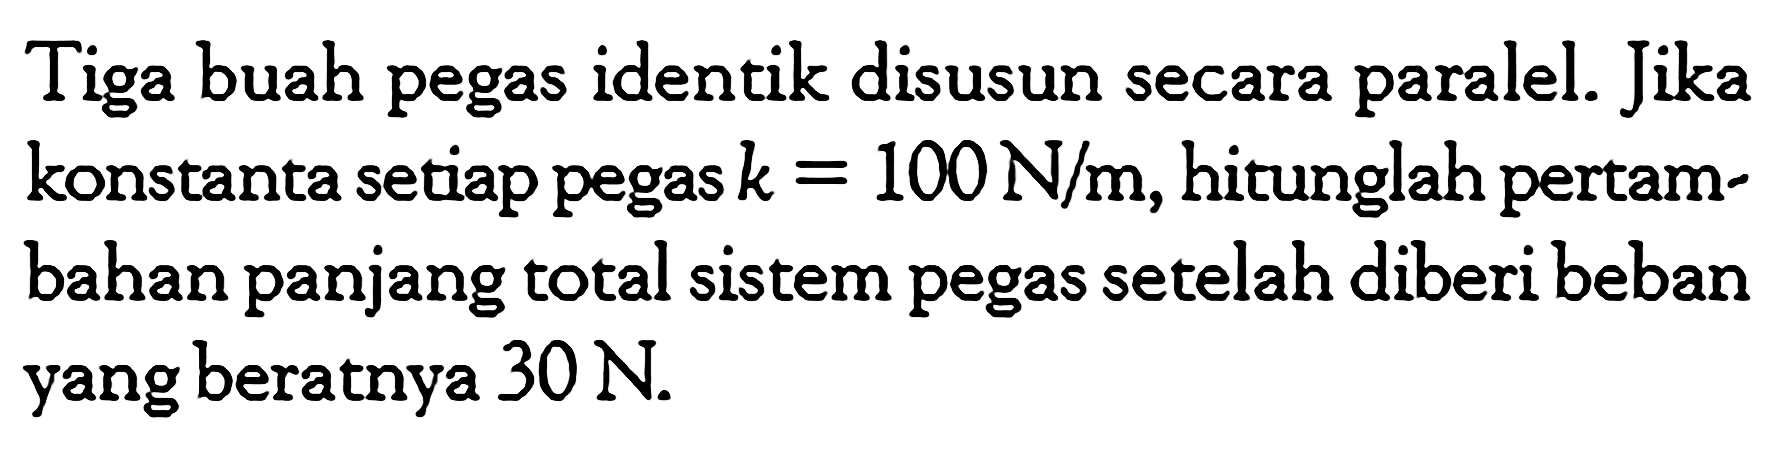 Tiga buah pegas identik disusun secra paralel. Jika konstanta setiap pegas k = 100 N/m, hitunglah pertambahan panjang total sistem pegas setelah diberi beban yang beratnya 30 N.